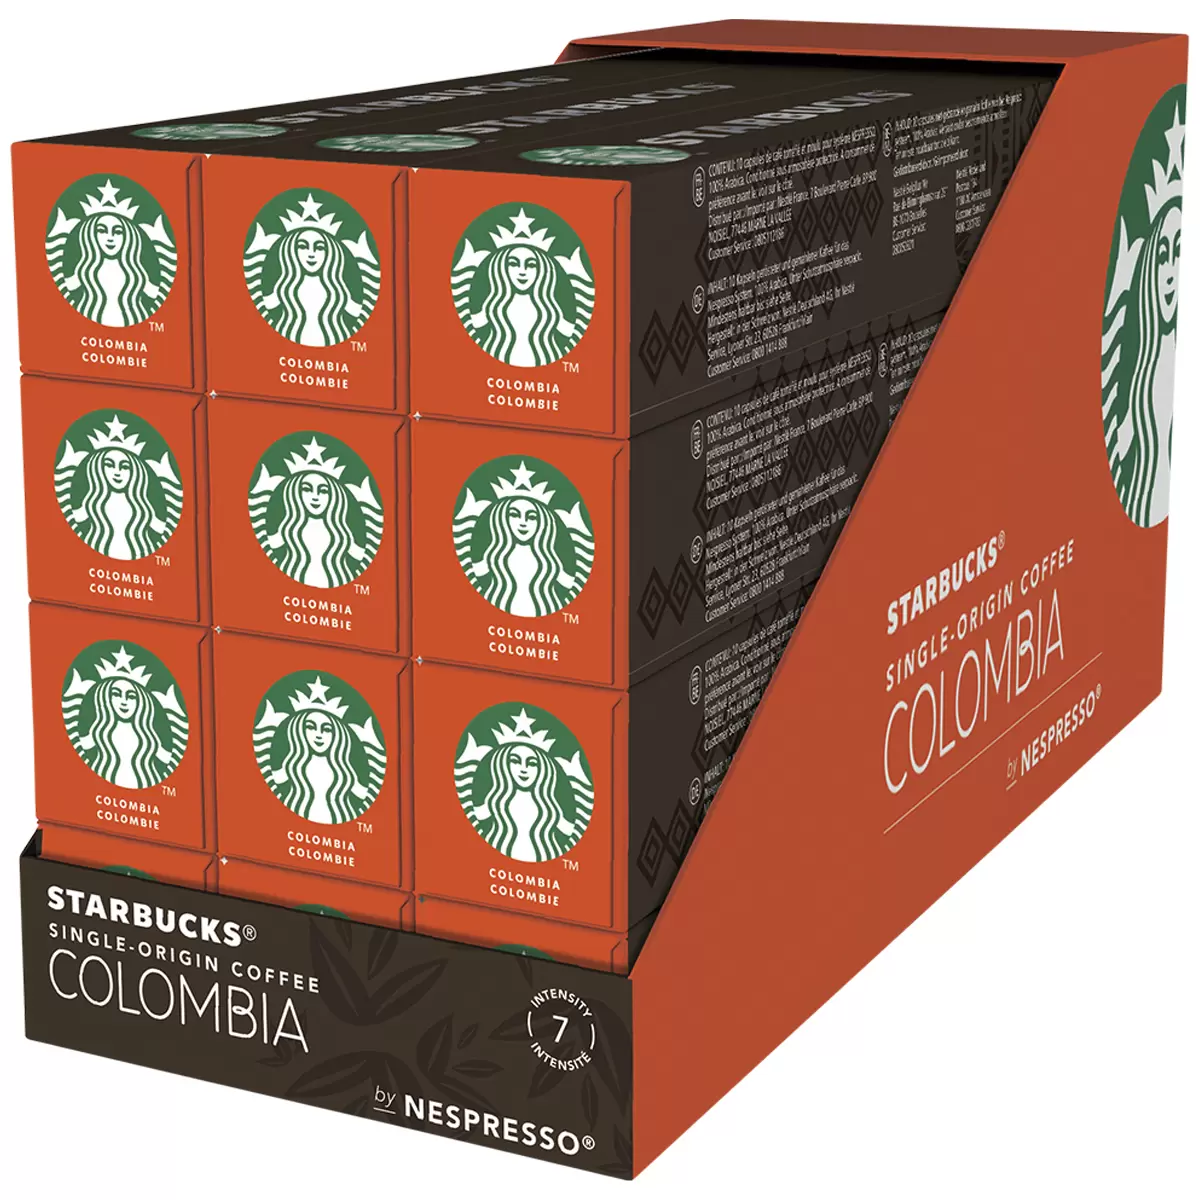 Starbucks Single-Origin Coffee Colombia